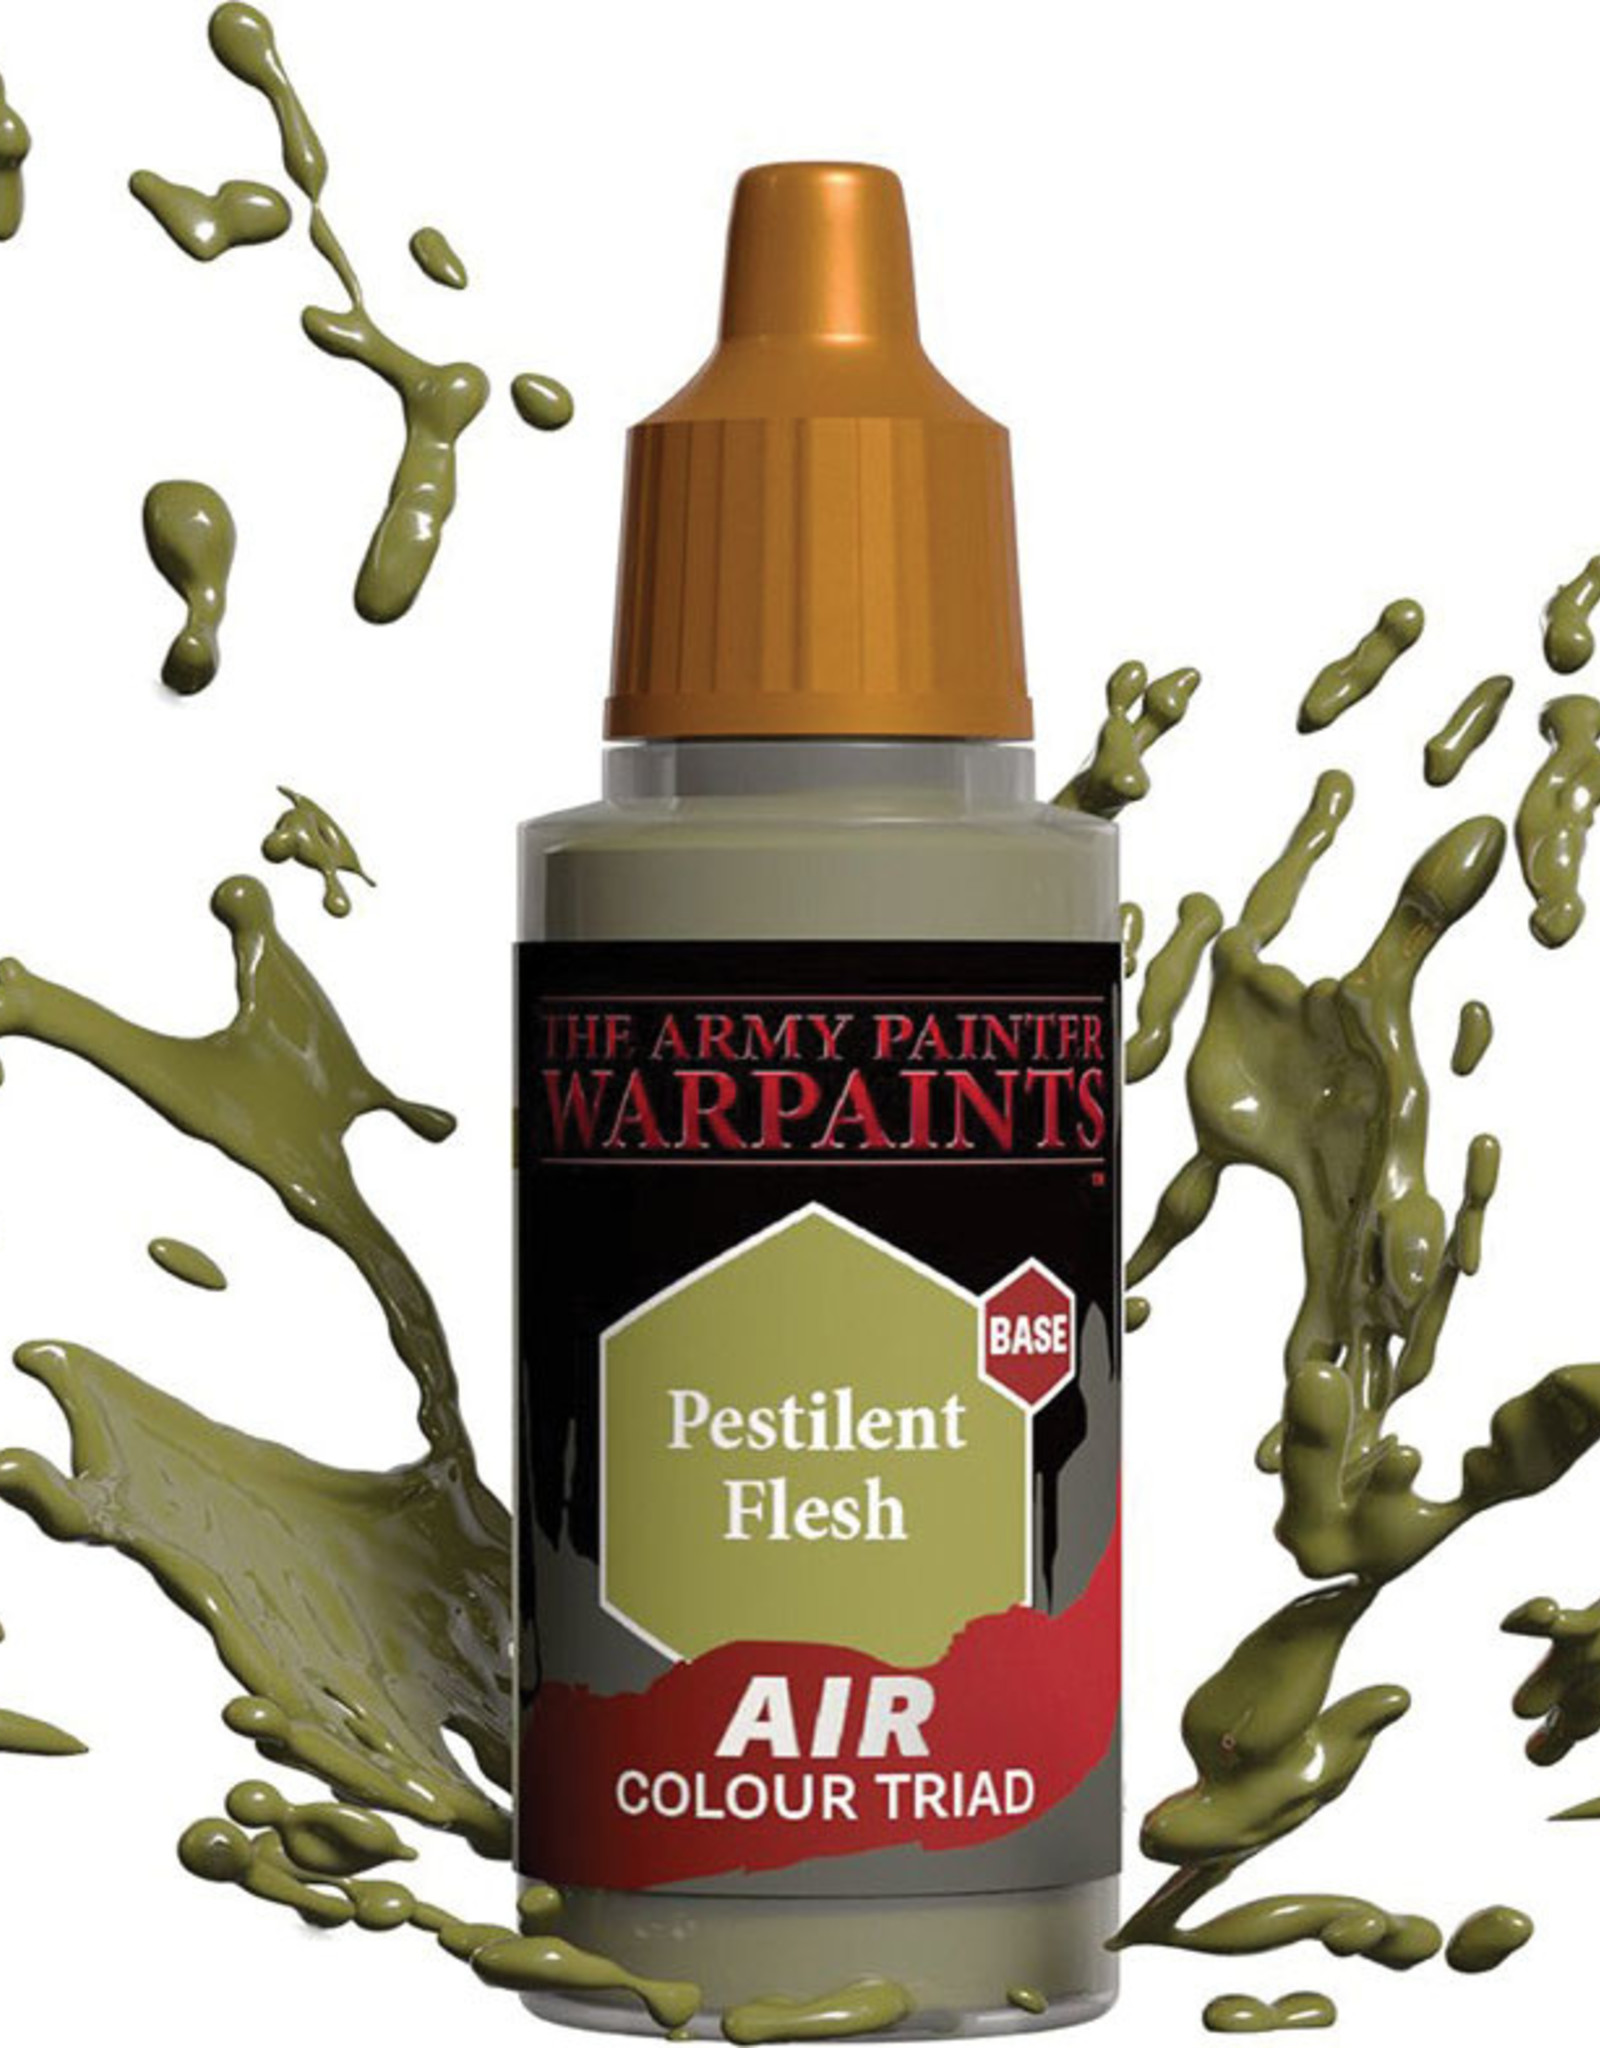 Warpaints Air: Pestilent Flesh